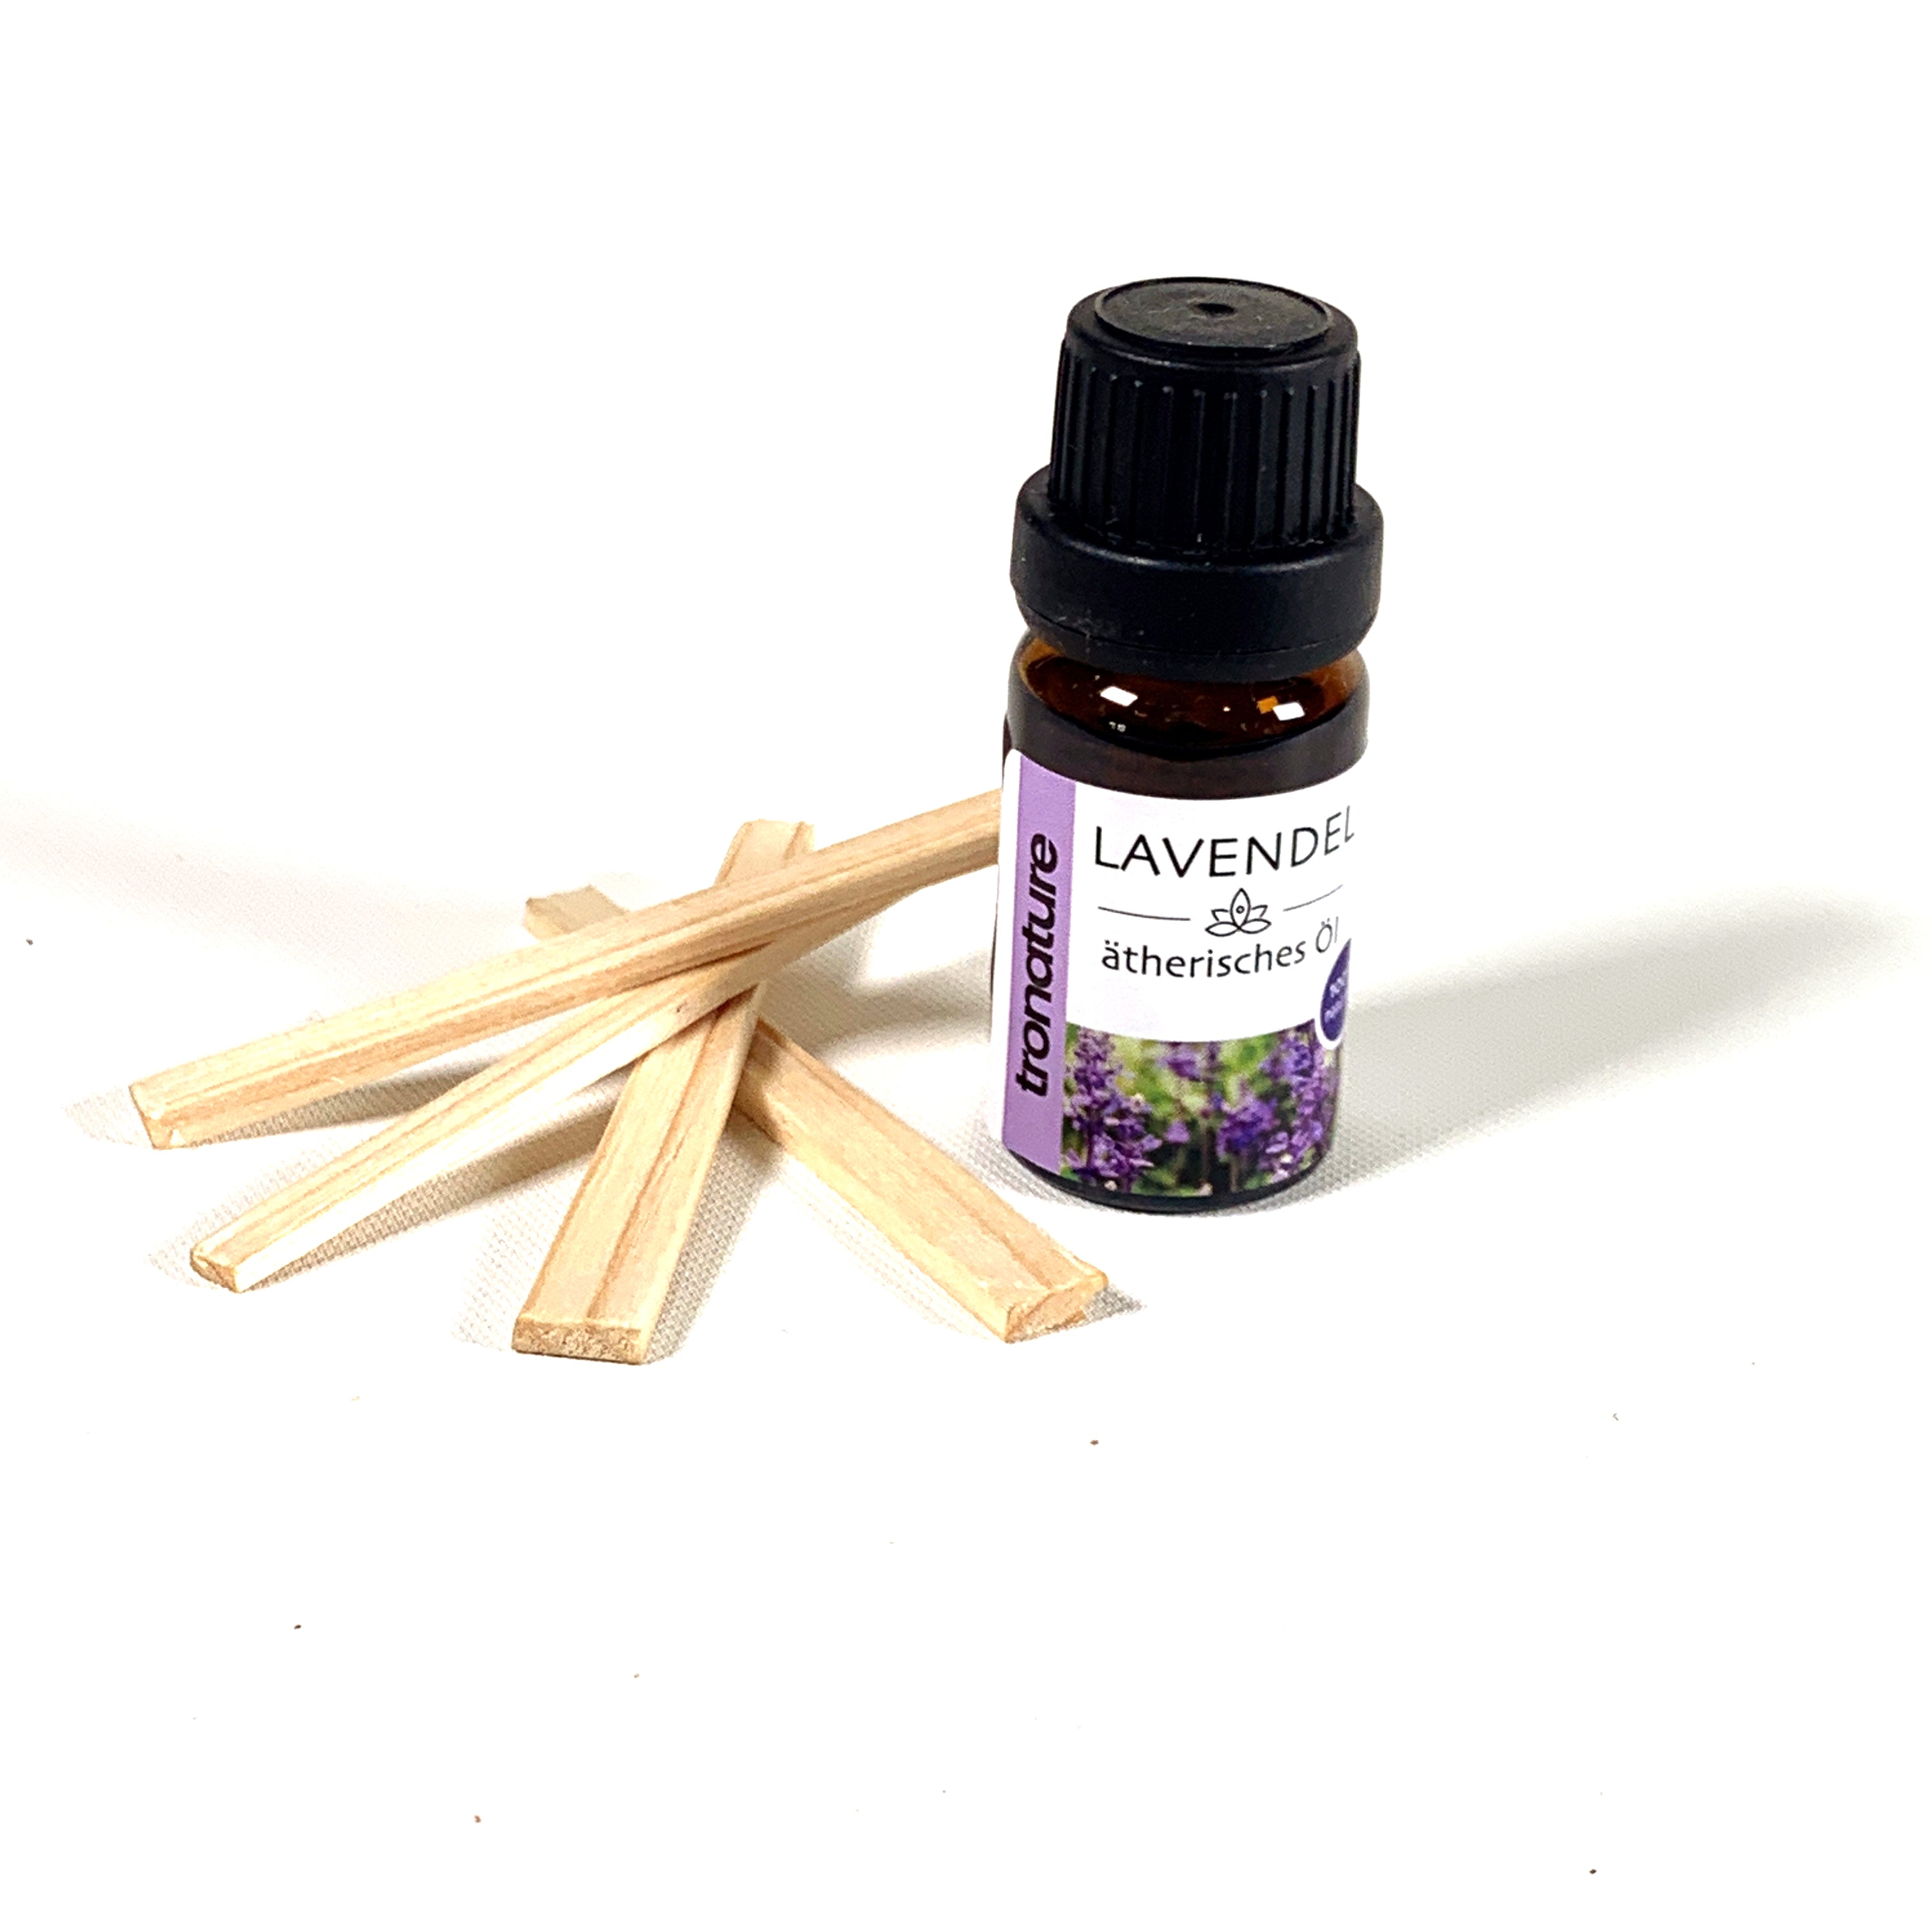 Lavendelöl 10ml - 100% Rein & Natürliches ätherisches Öl für Guten Schlaf - Beauty - Schönheit - Aromatherapie - Entspannung - Raumduft - Duftlampe